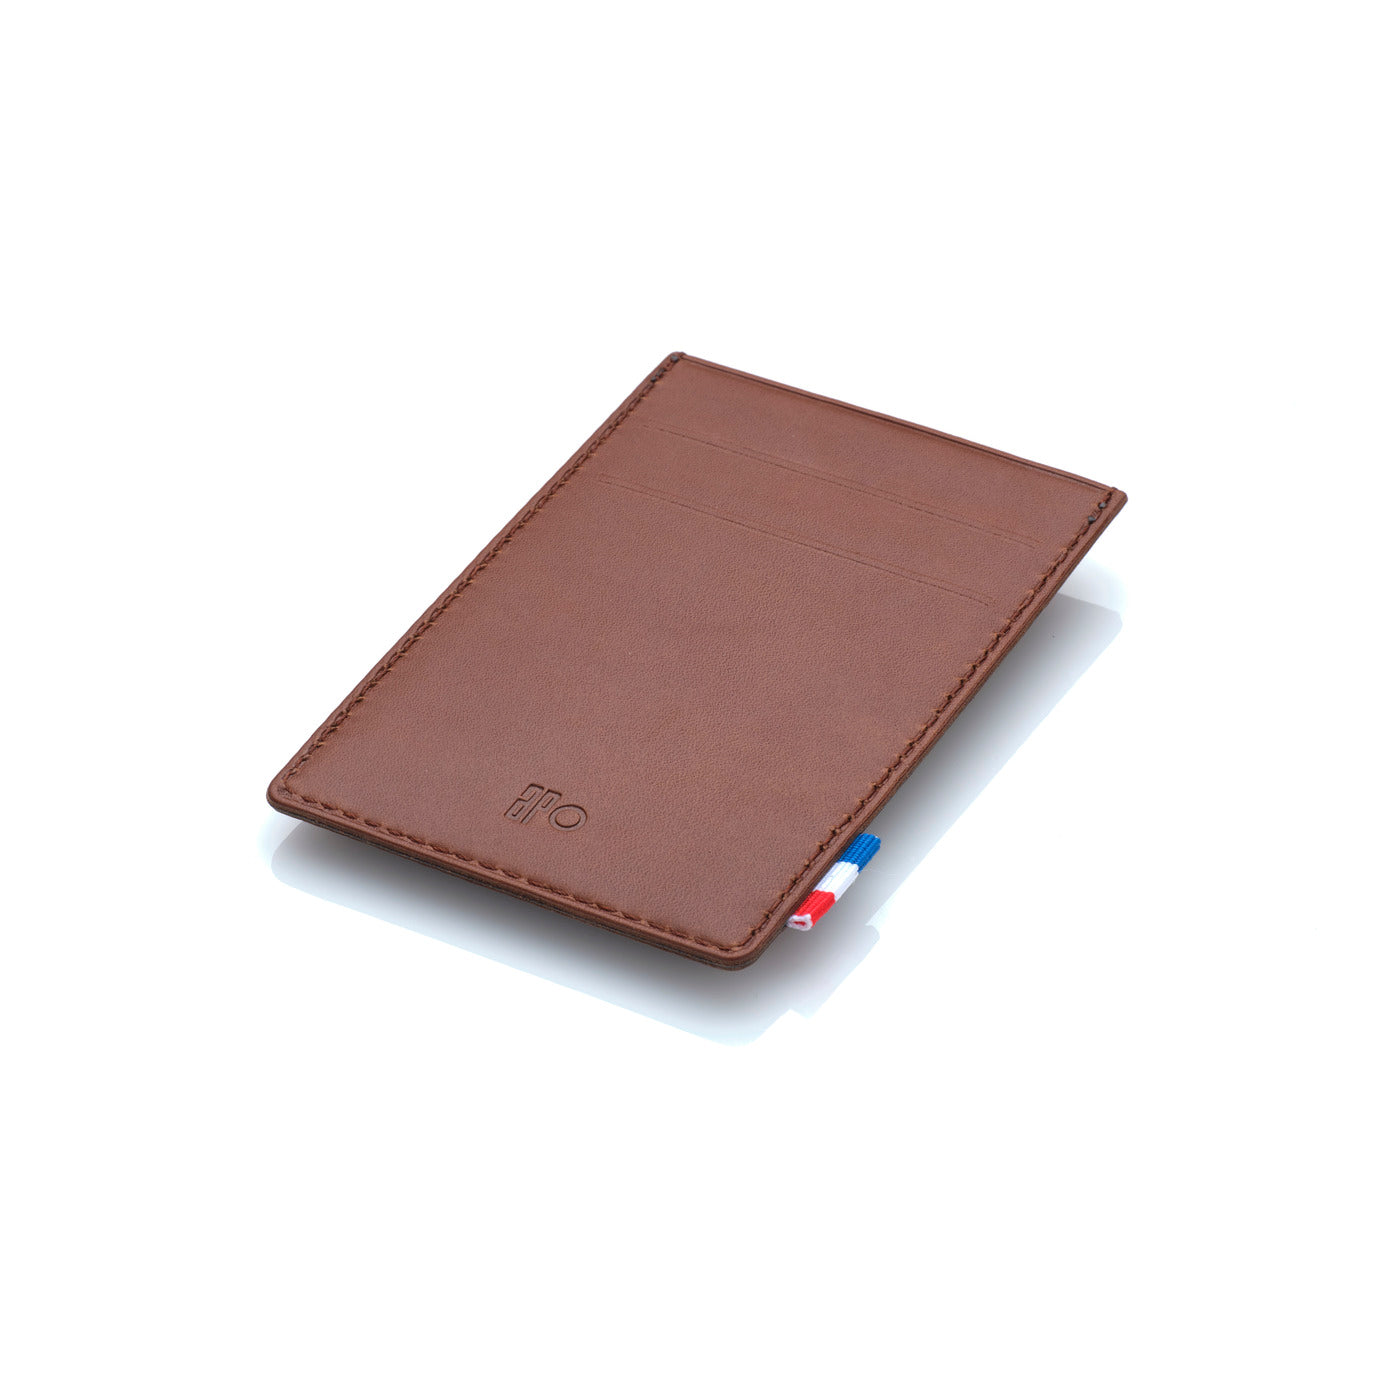 GREG - Pince à billet et porte-cartes en cuir patiné - Chocolat